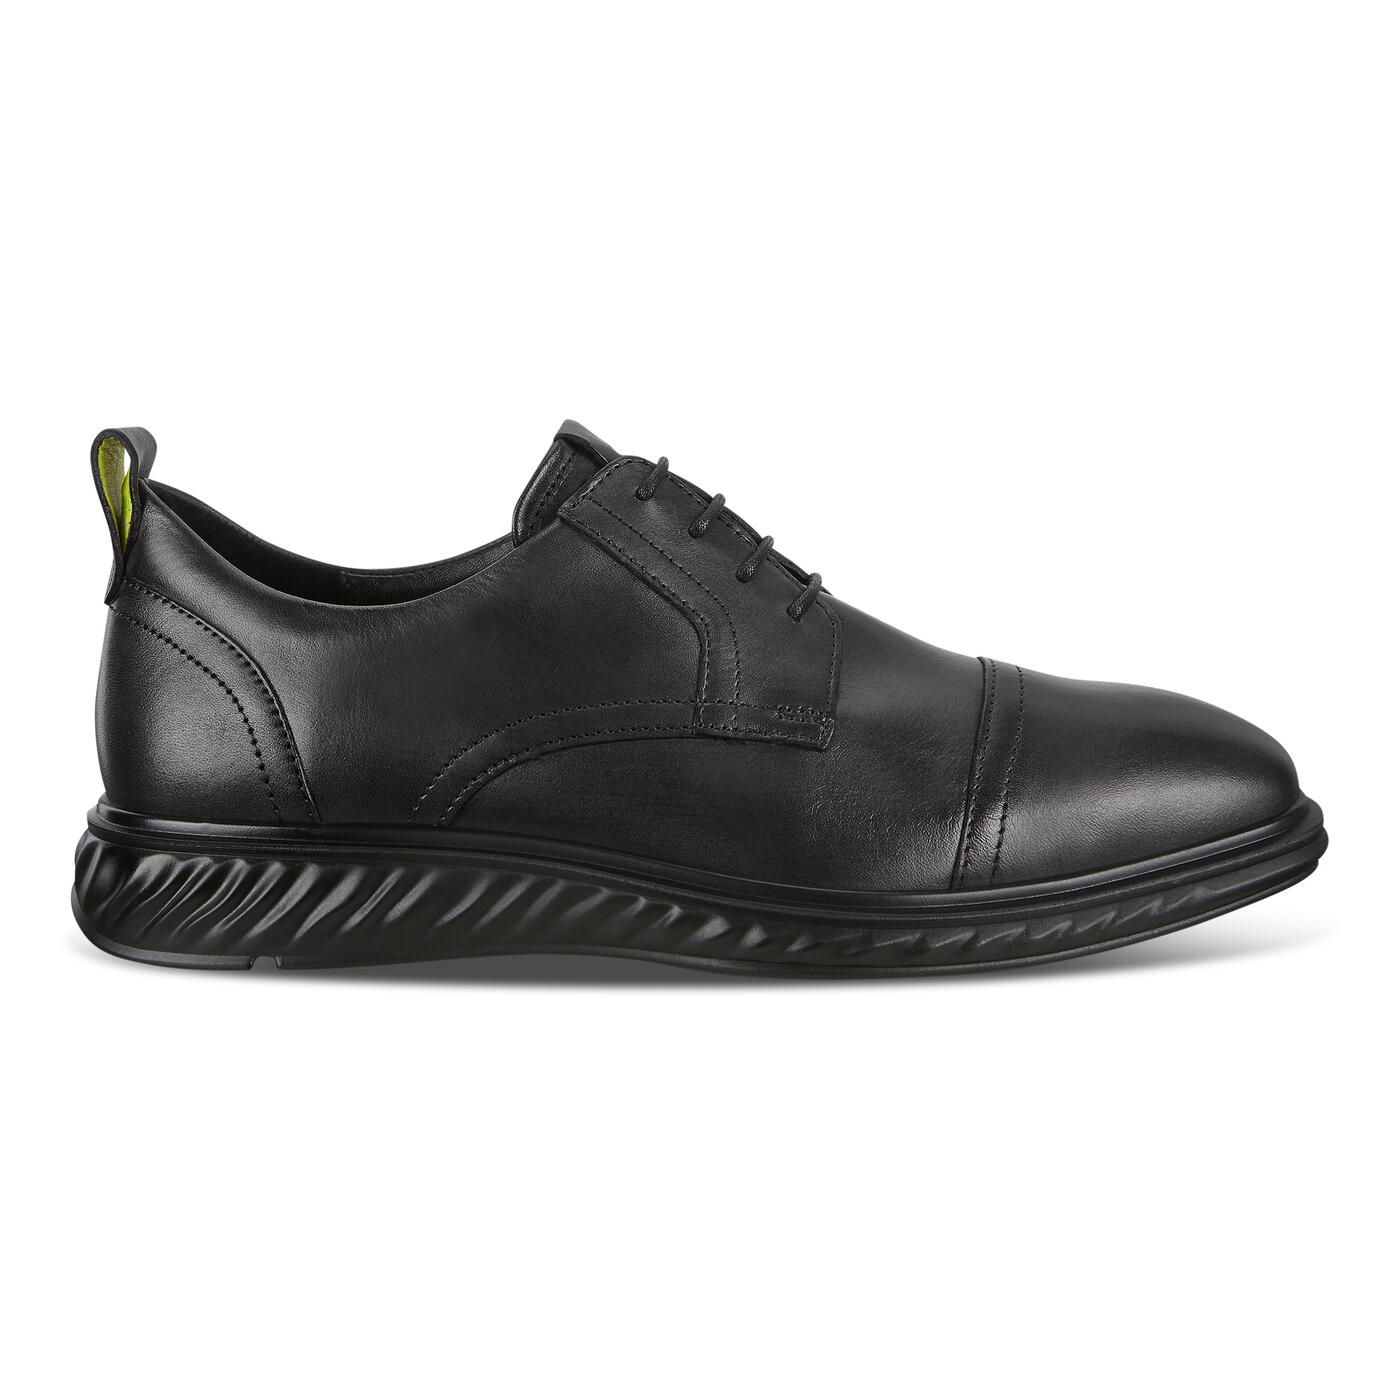 ECCO ST. 1 HYBRID LITE MEN'S SHOES | Official ECCO® Shoes